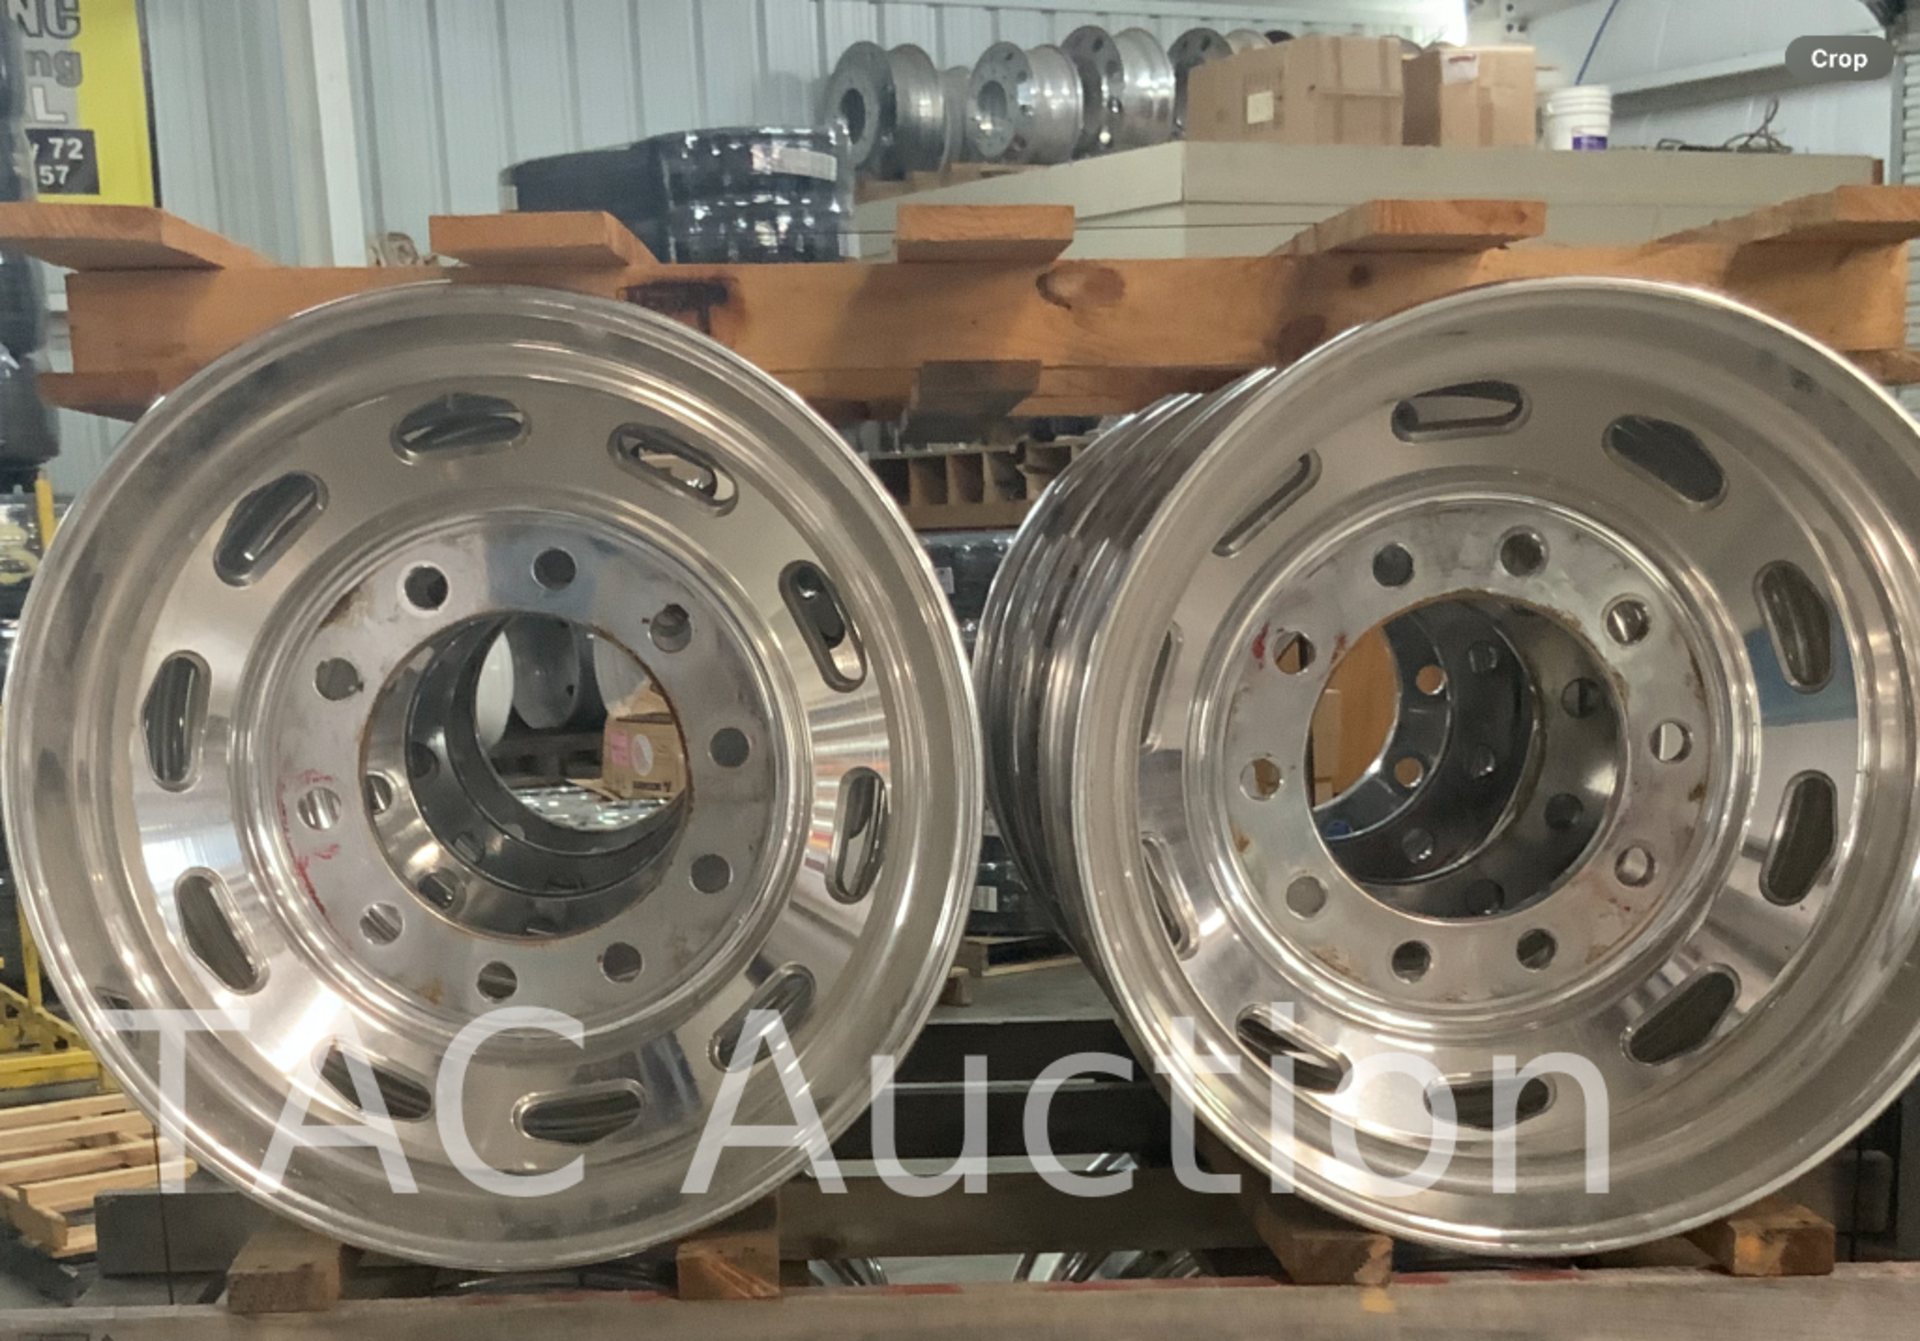 New (8) Accuride Aluminum Wheels 8.25 X 22.5 - Image 3 of 3